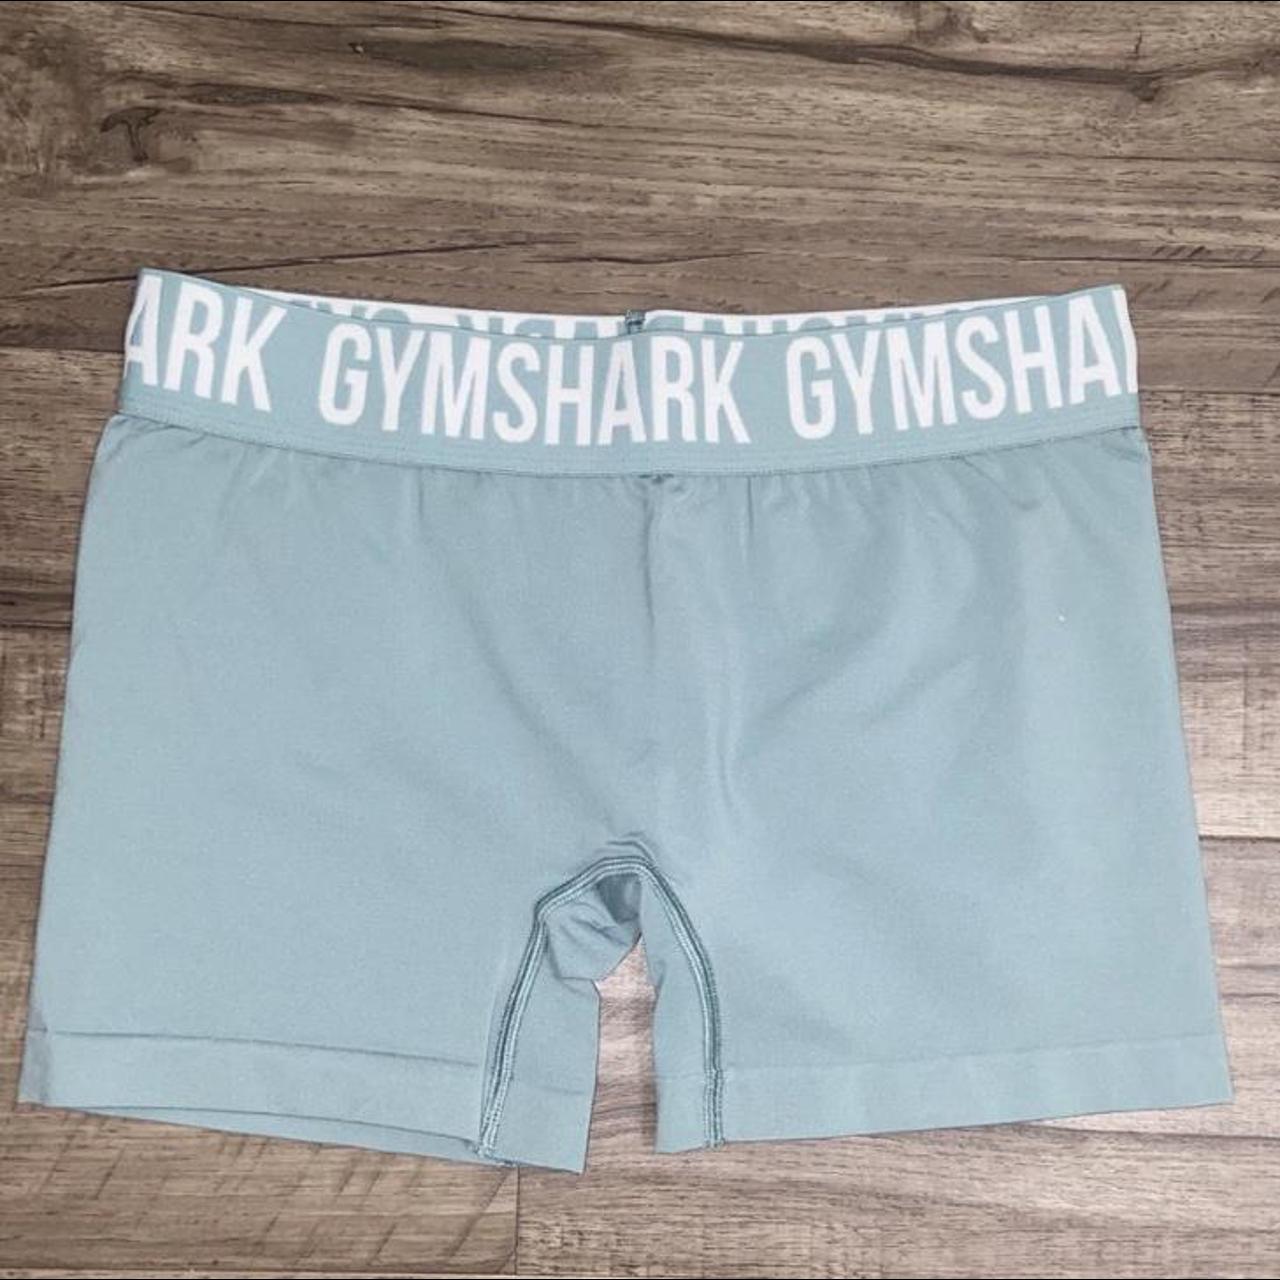 Gymshark Fit Seamless Shorts - Light Green... - Depop